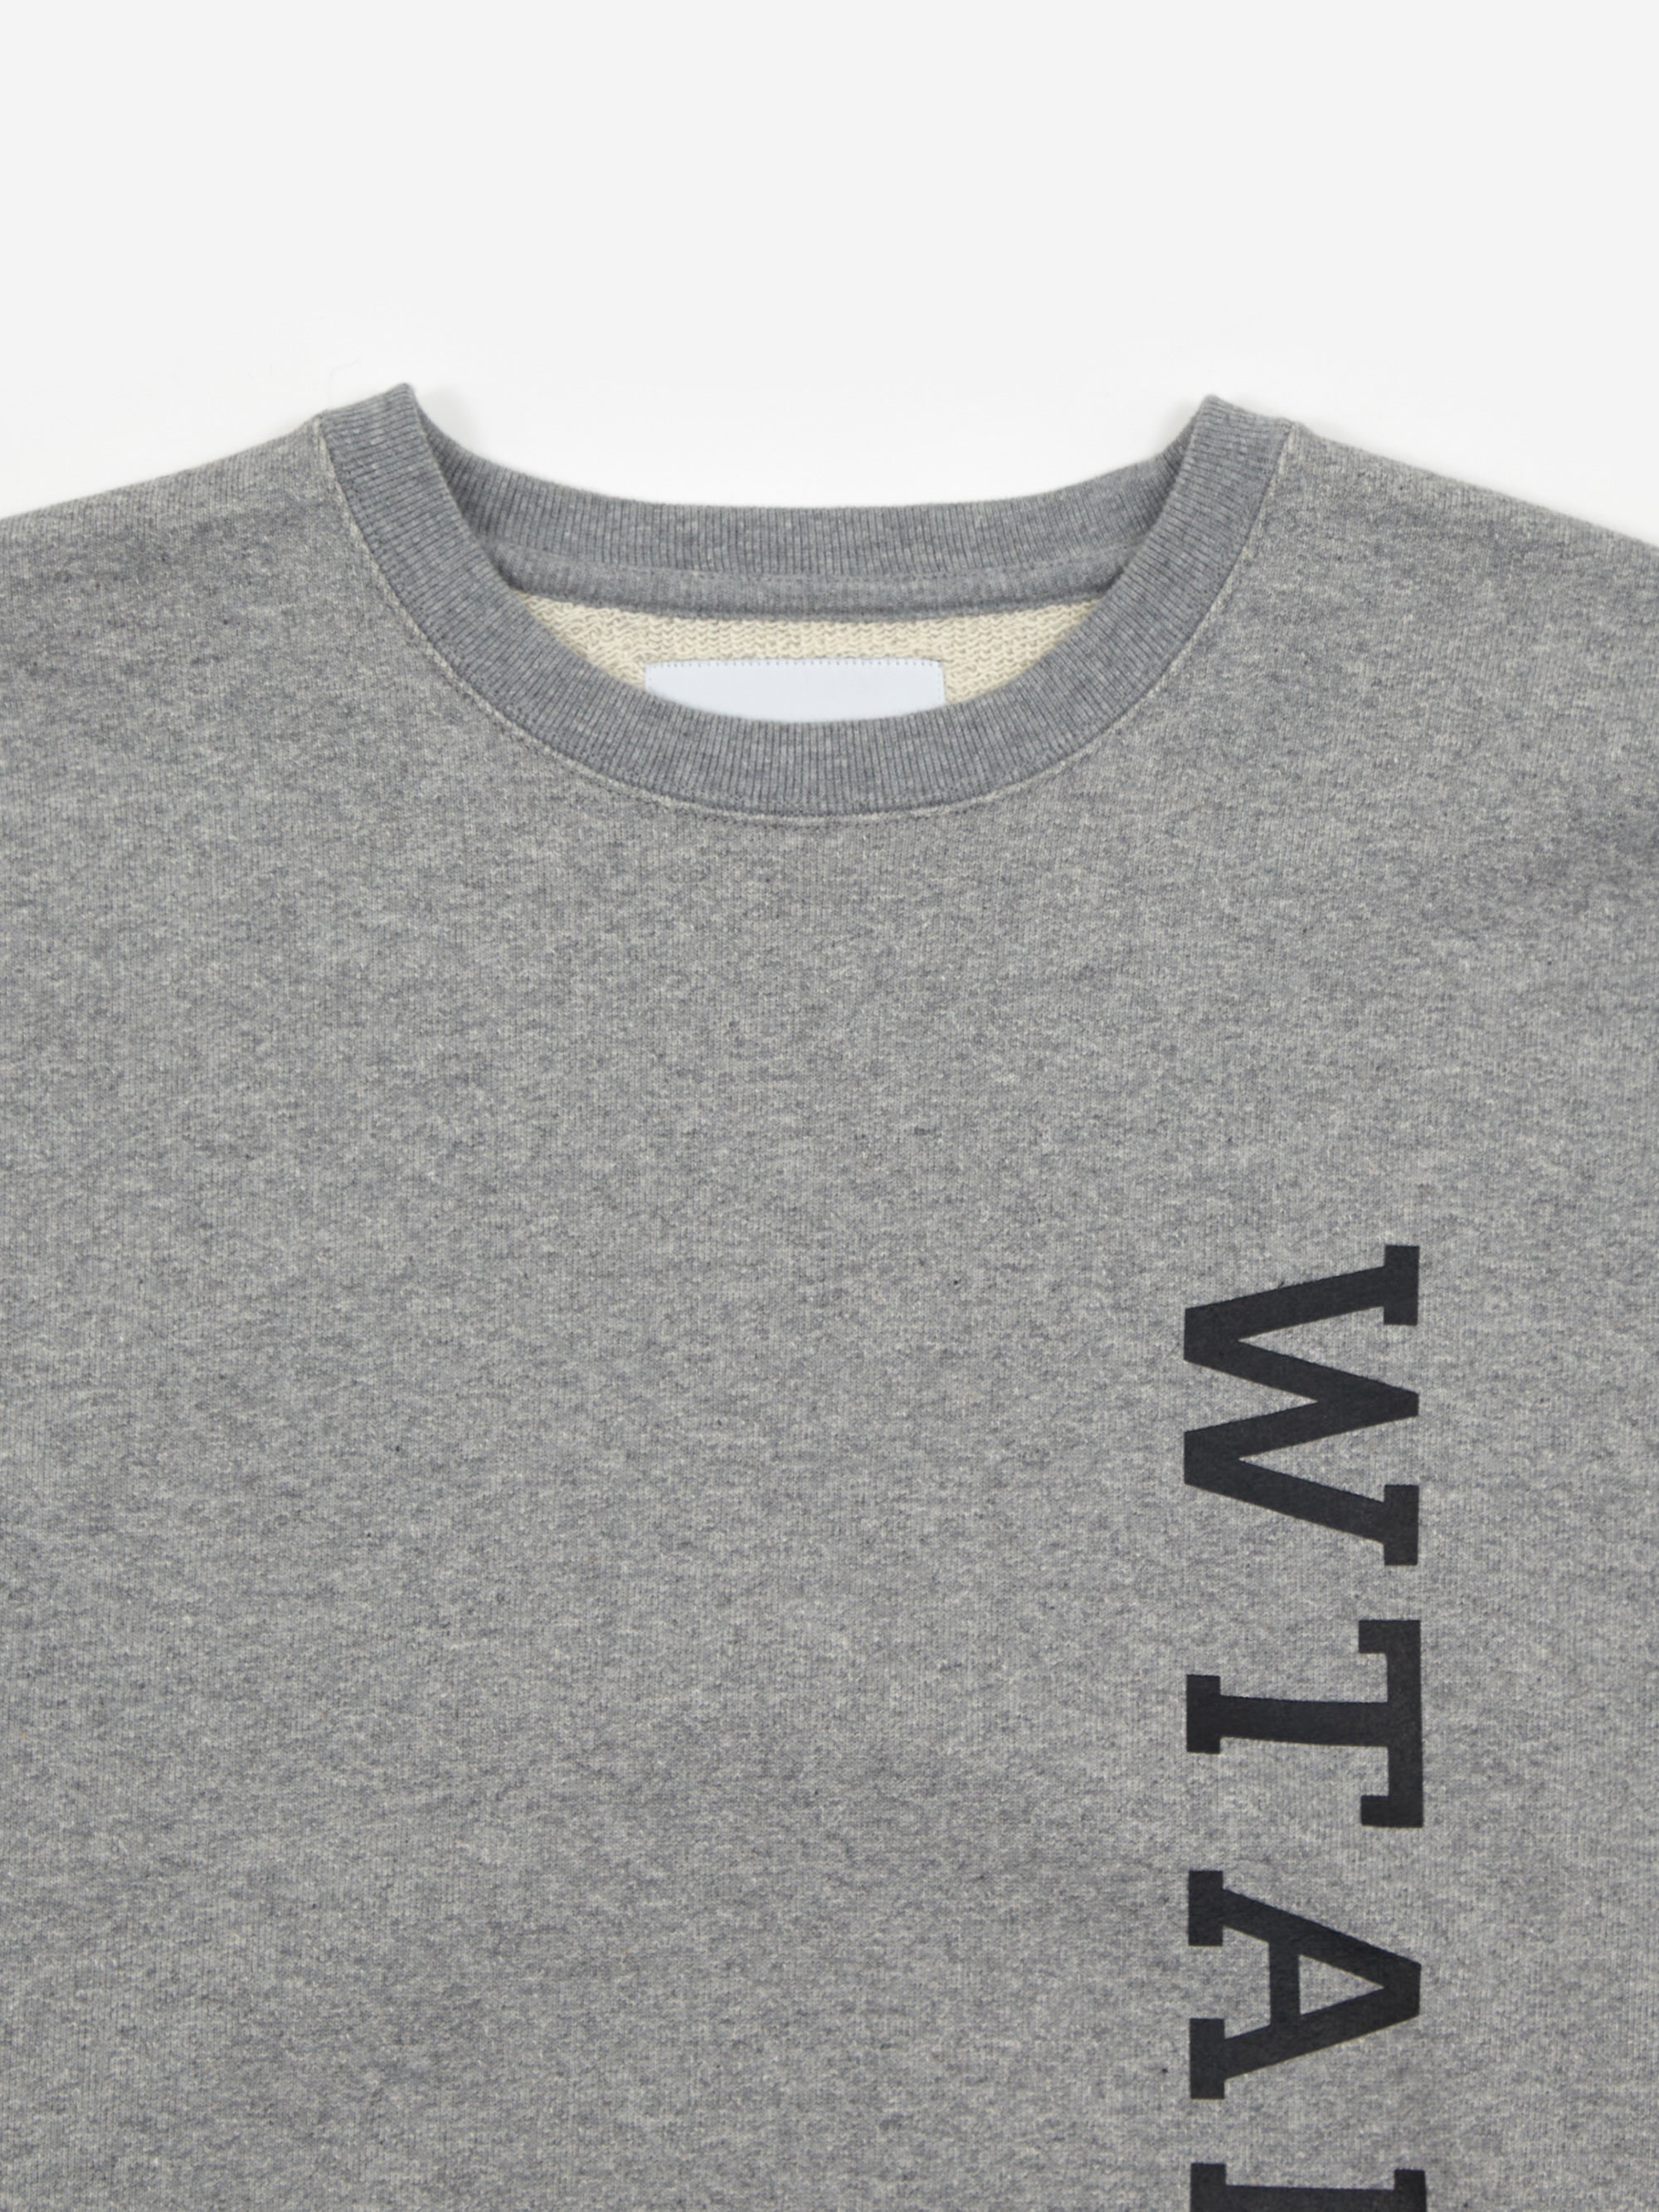 WTAPS Design 01 / Sweater / Cotton. College - Ash Gray